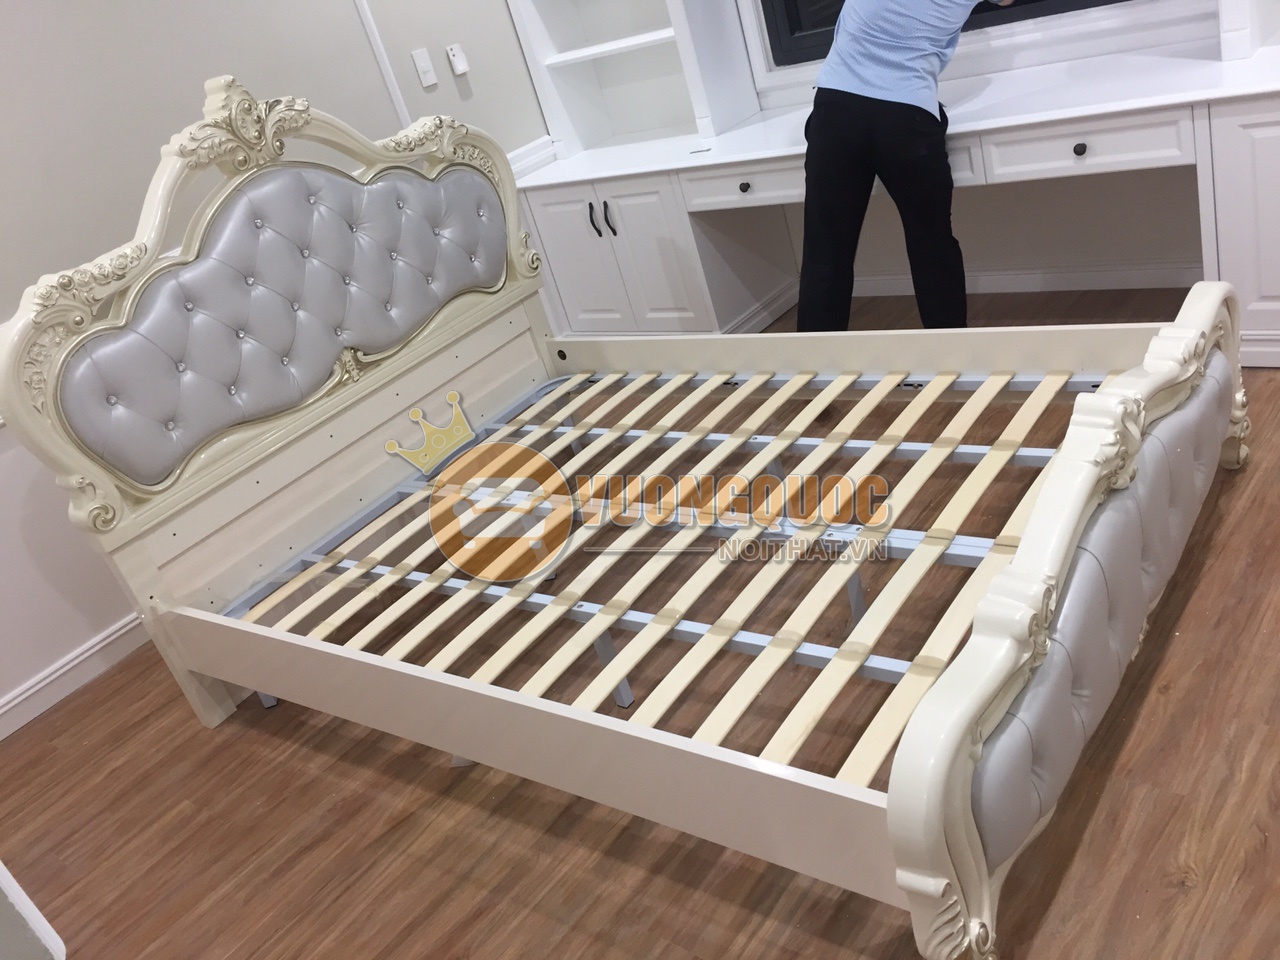 Chùm ảnh: Hình ảnh lắp đặt giường ngủ tân cổ điển cao cấp hoàn thiện tại Hà Nội  - Vương Quốc Nội Thất.